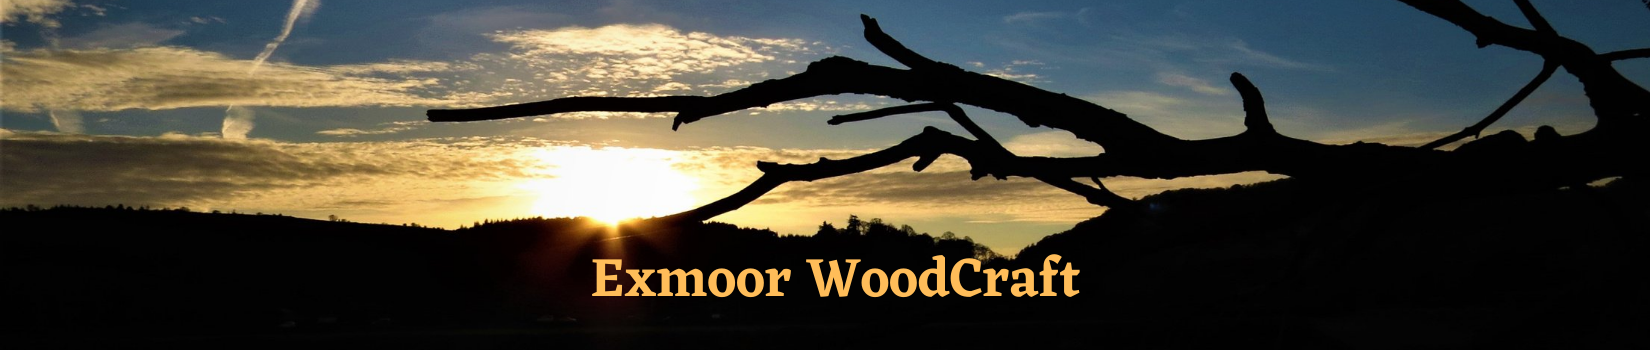 Exmoor WoodCraft